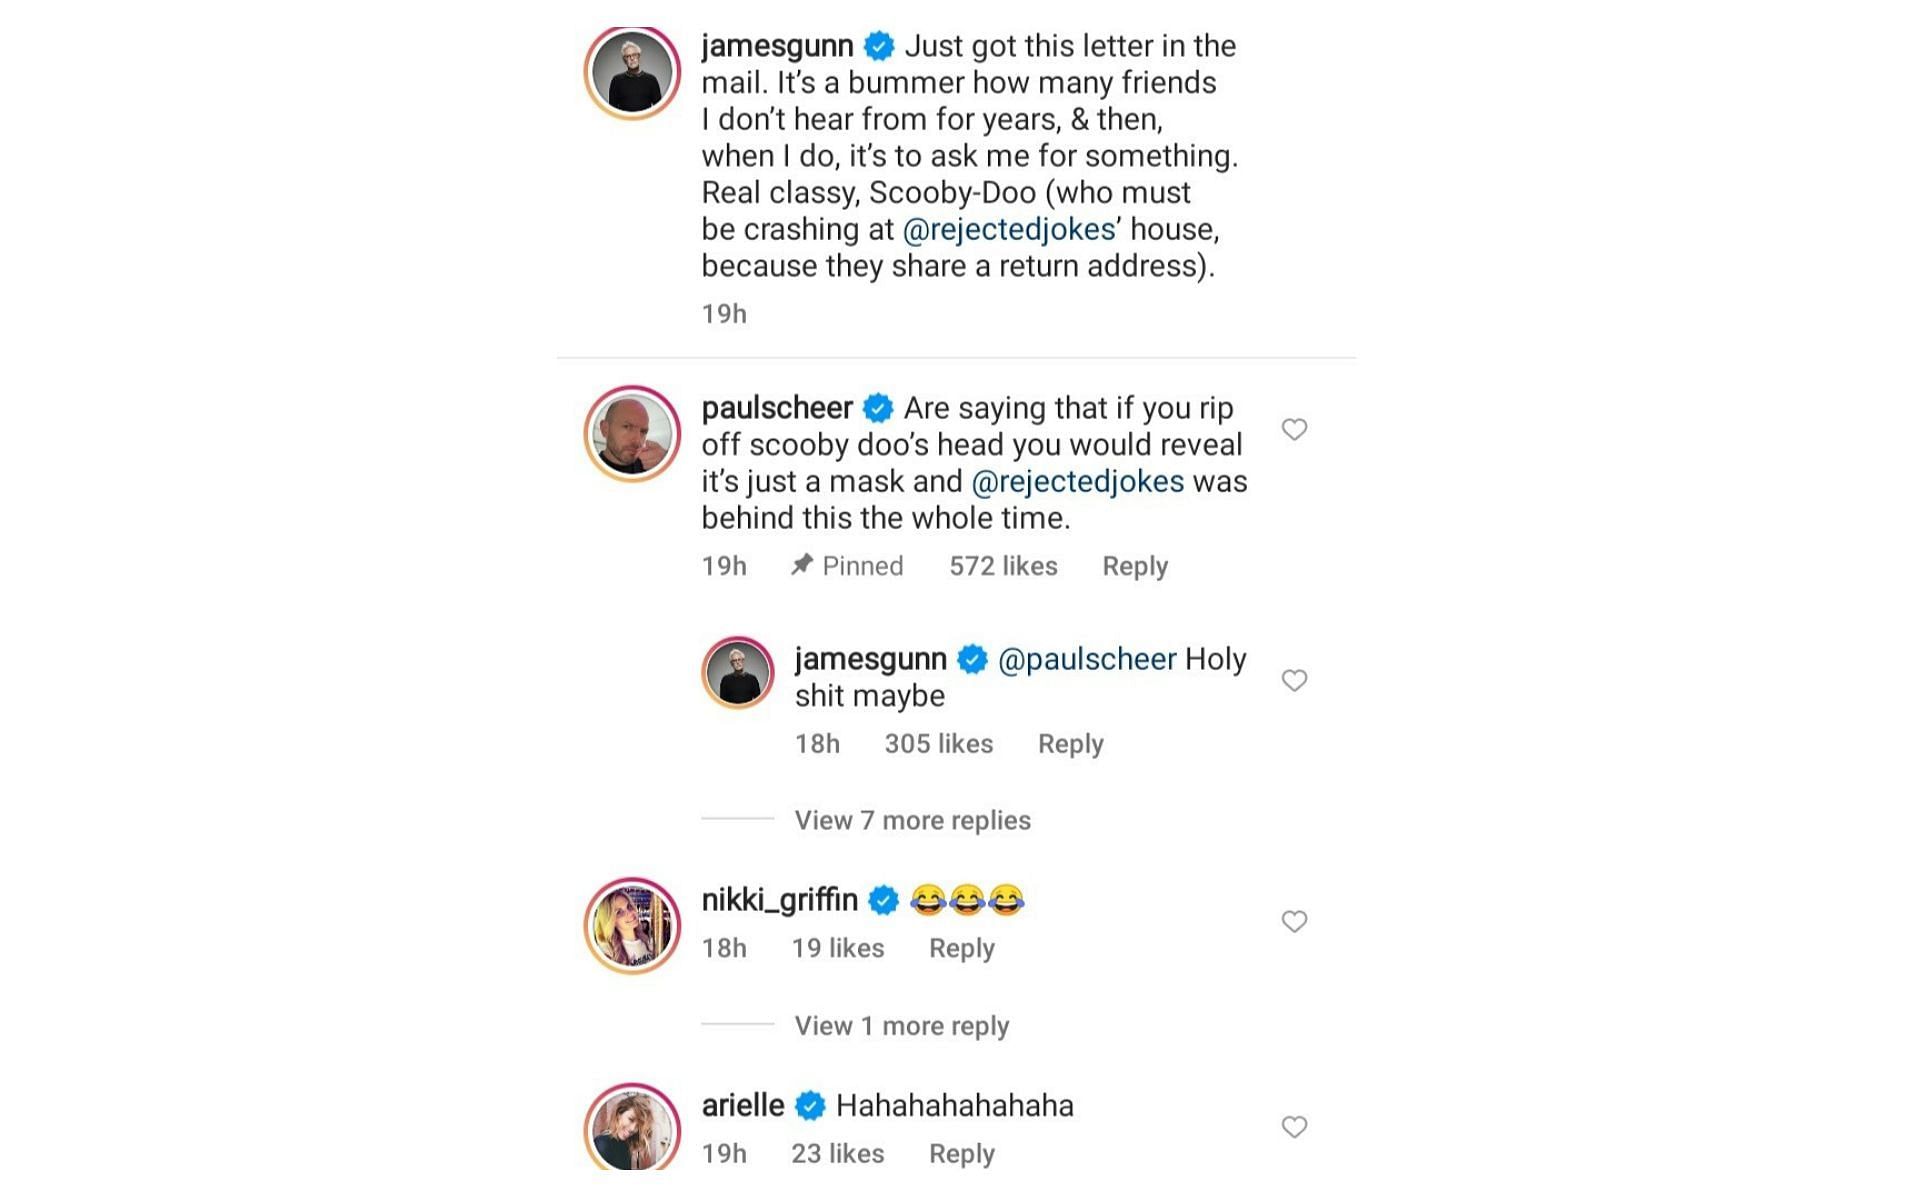 Comentarios en la publicación, que muestran la carta, compartida por James Gunn en Instagram (Imagen a través de jamesgunn @Instagram)